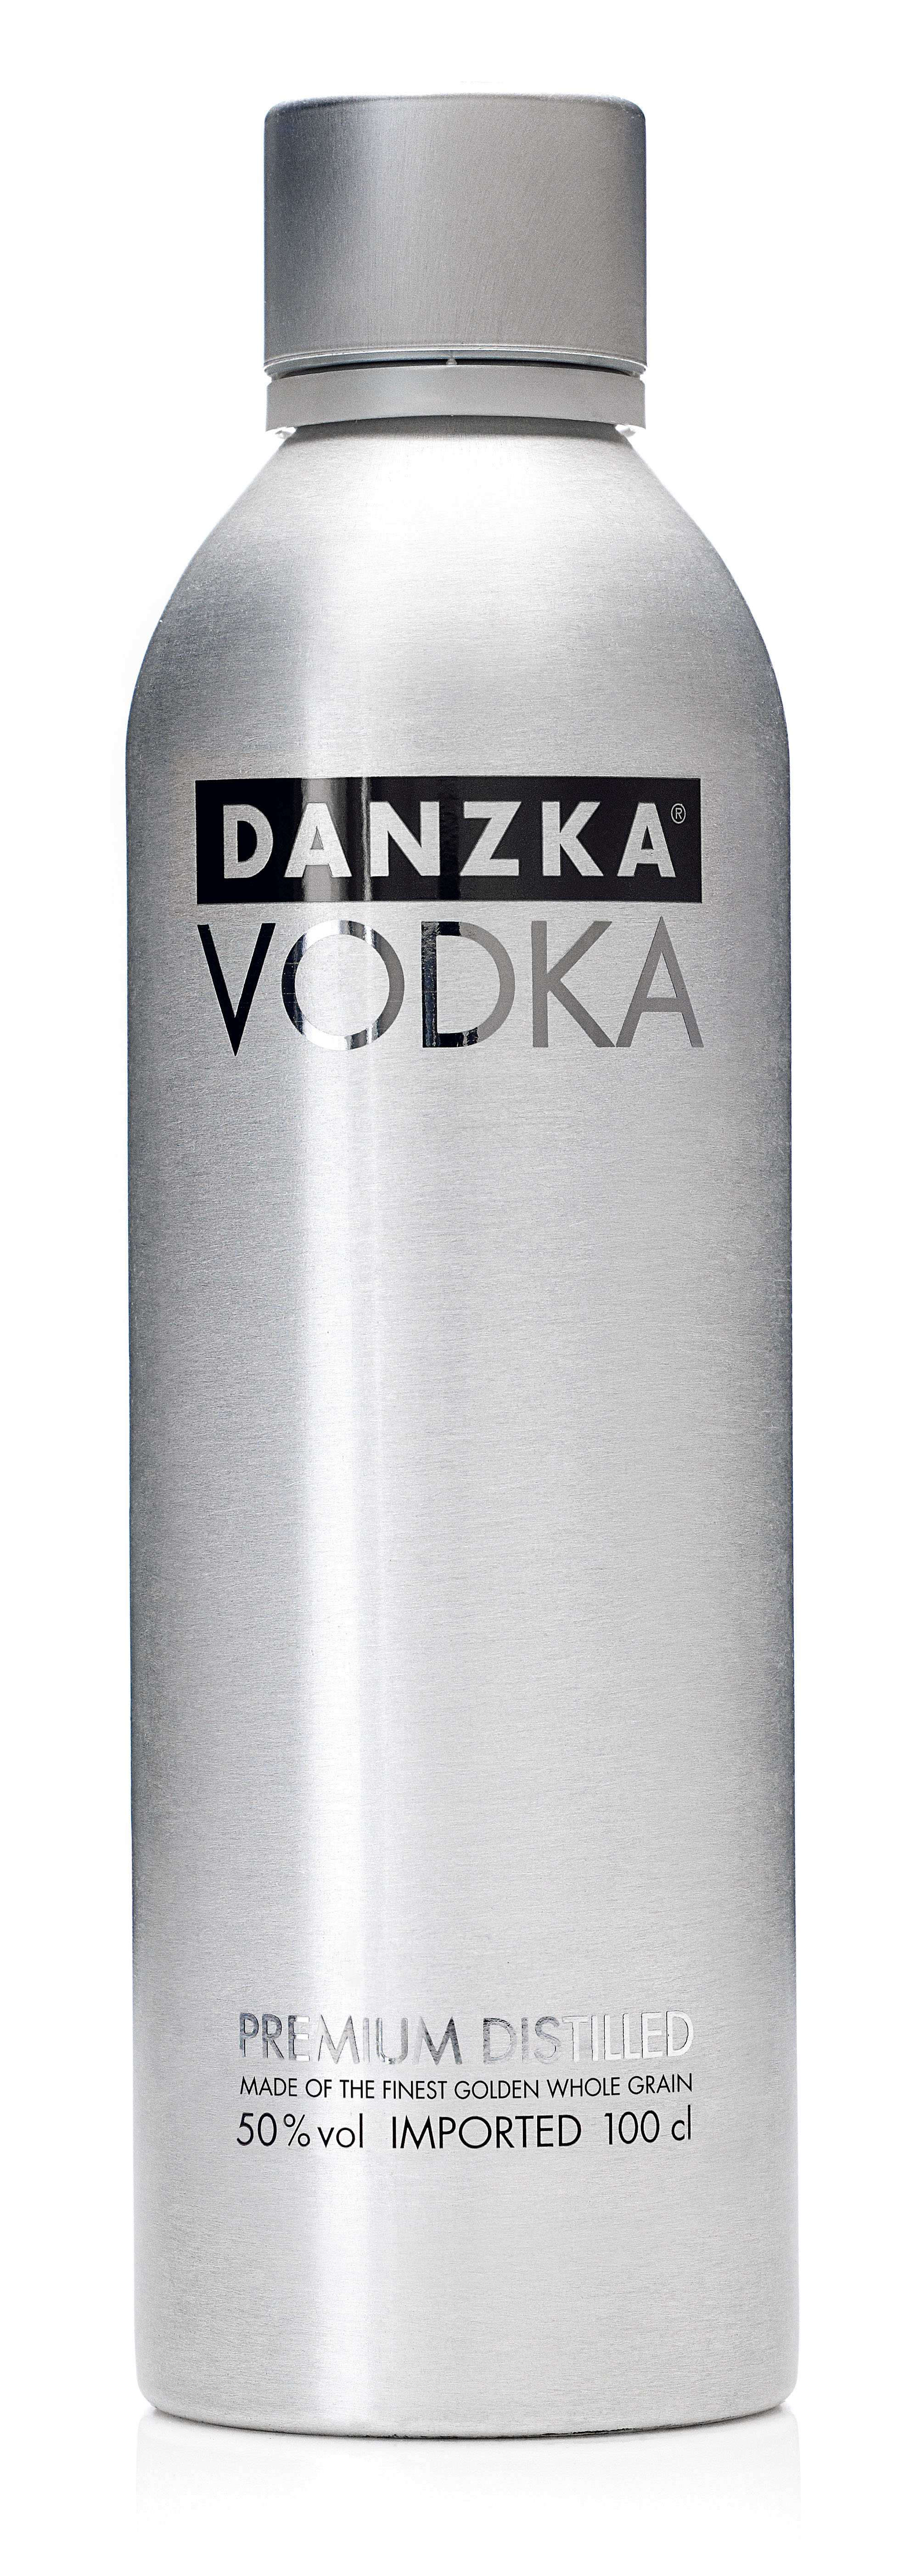 Danzka Vodka im Aluzylinder   